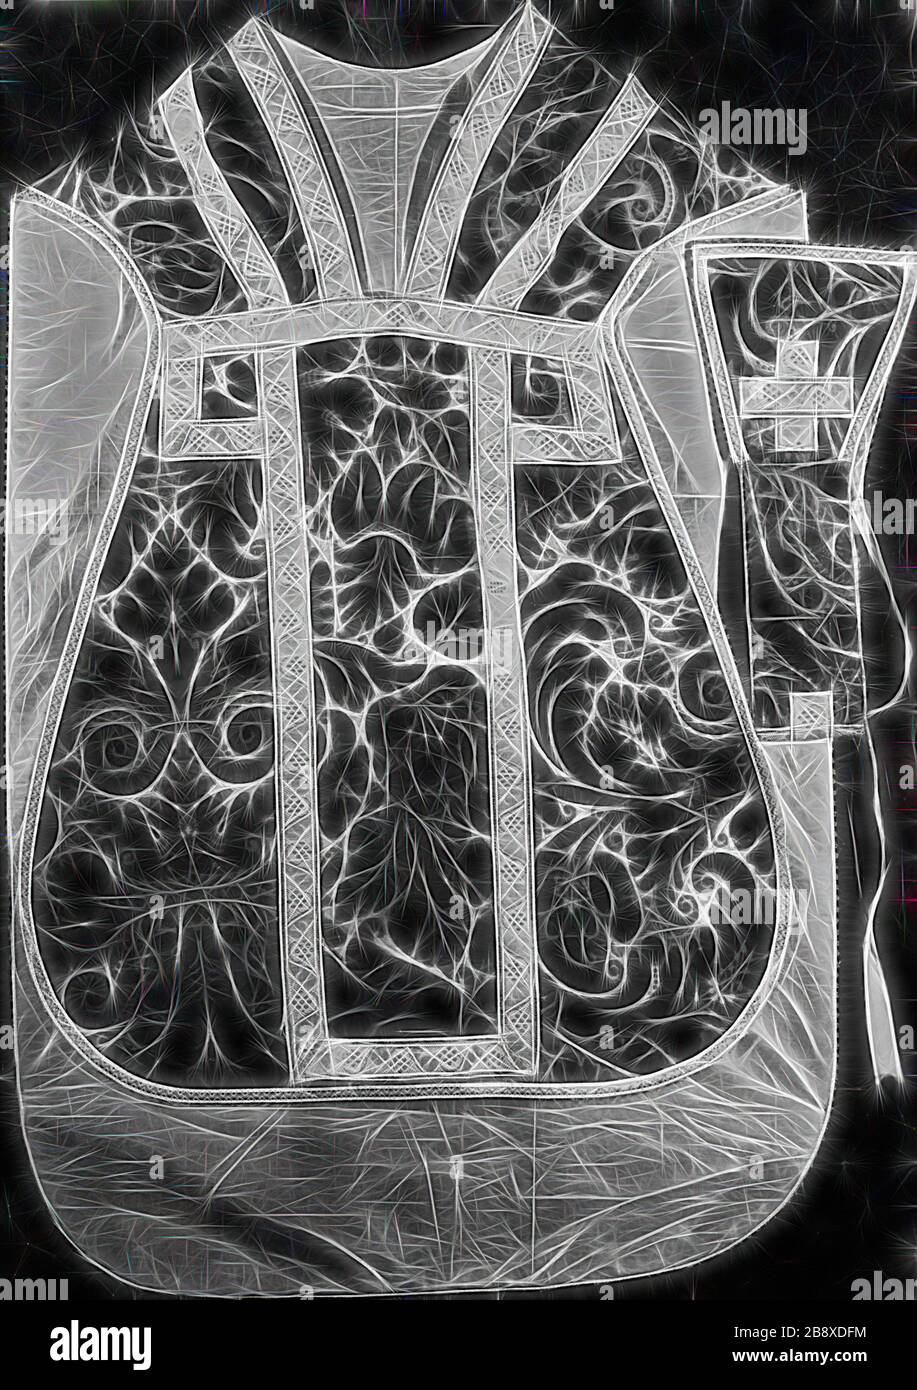 Casula e manichino, 1575/1600, Italia, velluto satinato satinato con  annullamento Cisele, reinventato da Gibon, disegno di caldo e allegro  bagliore di luminosità e raggi di luce radianza. Arte classica reinventata  con un